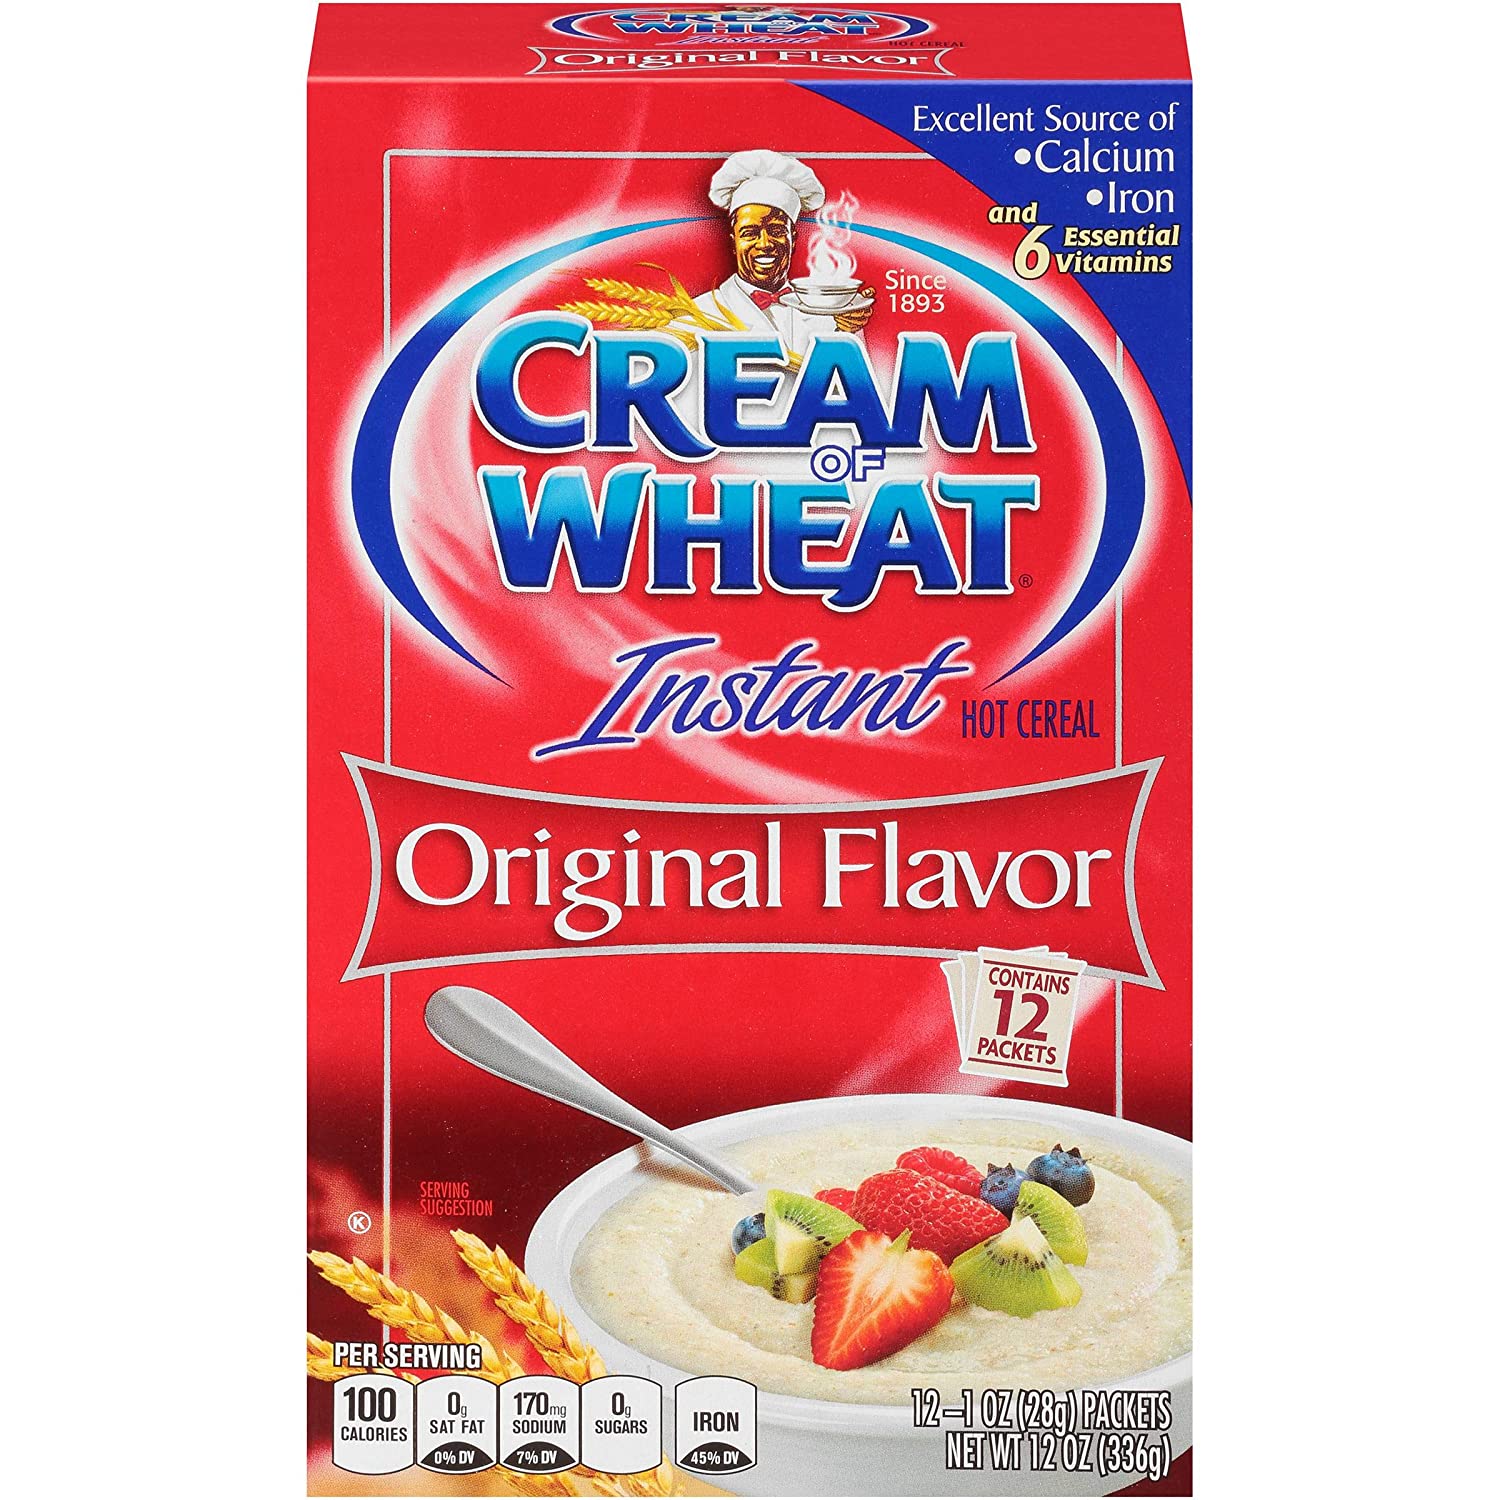 Cream Of Wheat Original Flavor Instant Hot Cereal Cream Of Wheat Original 12 Ounce 